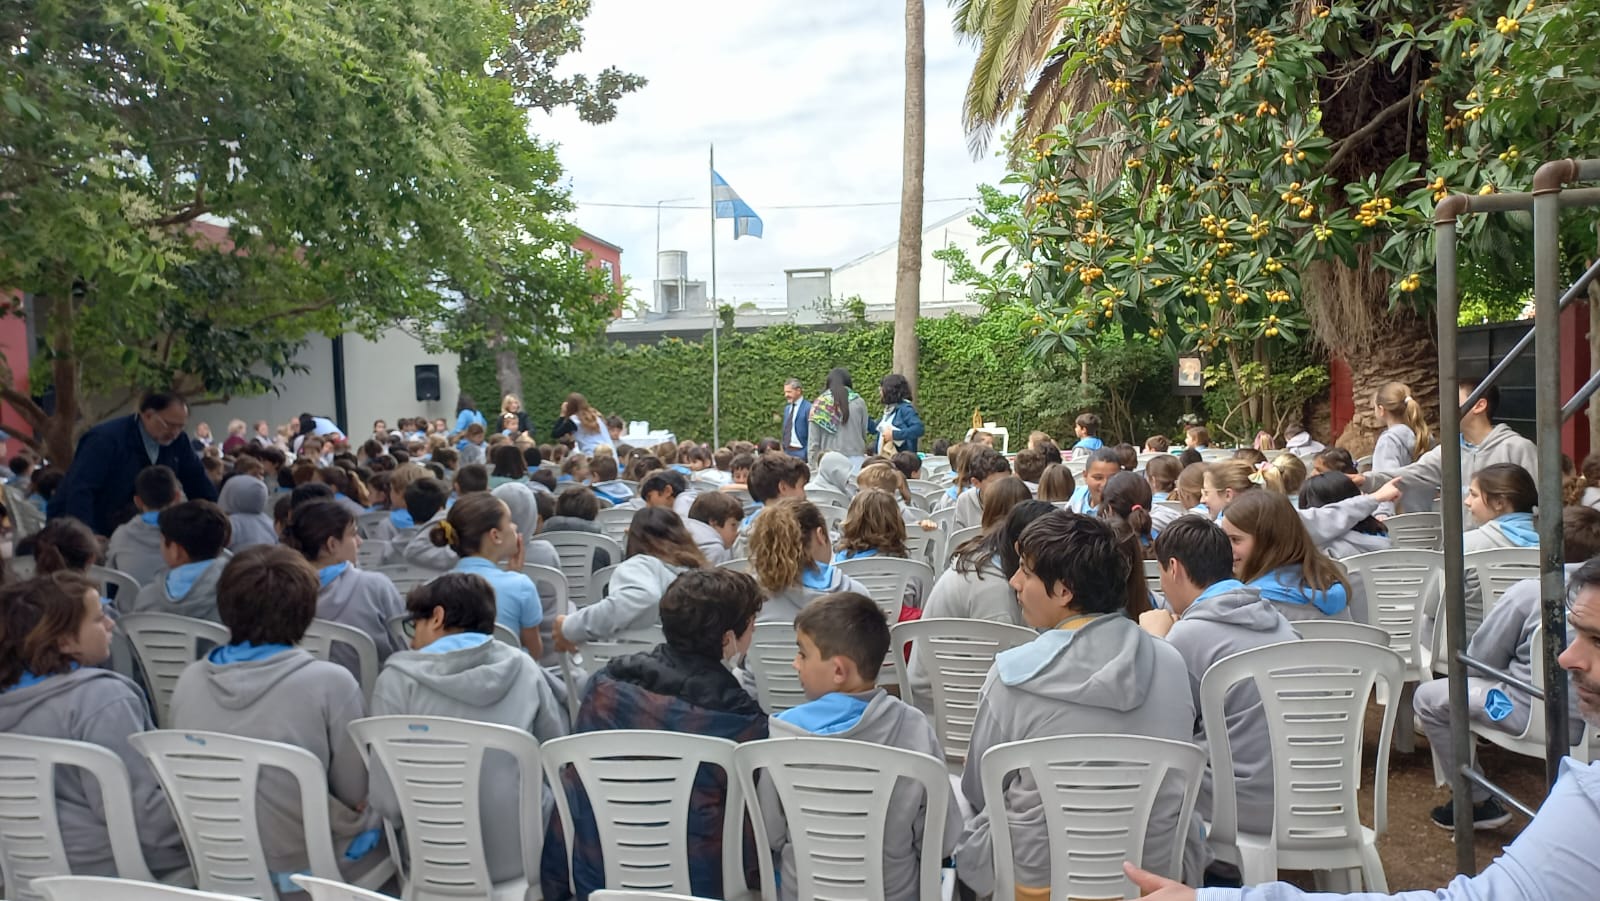 Colegio Covenant, La Plata